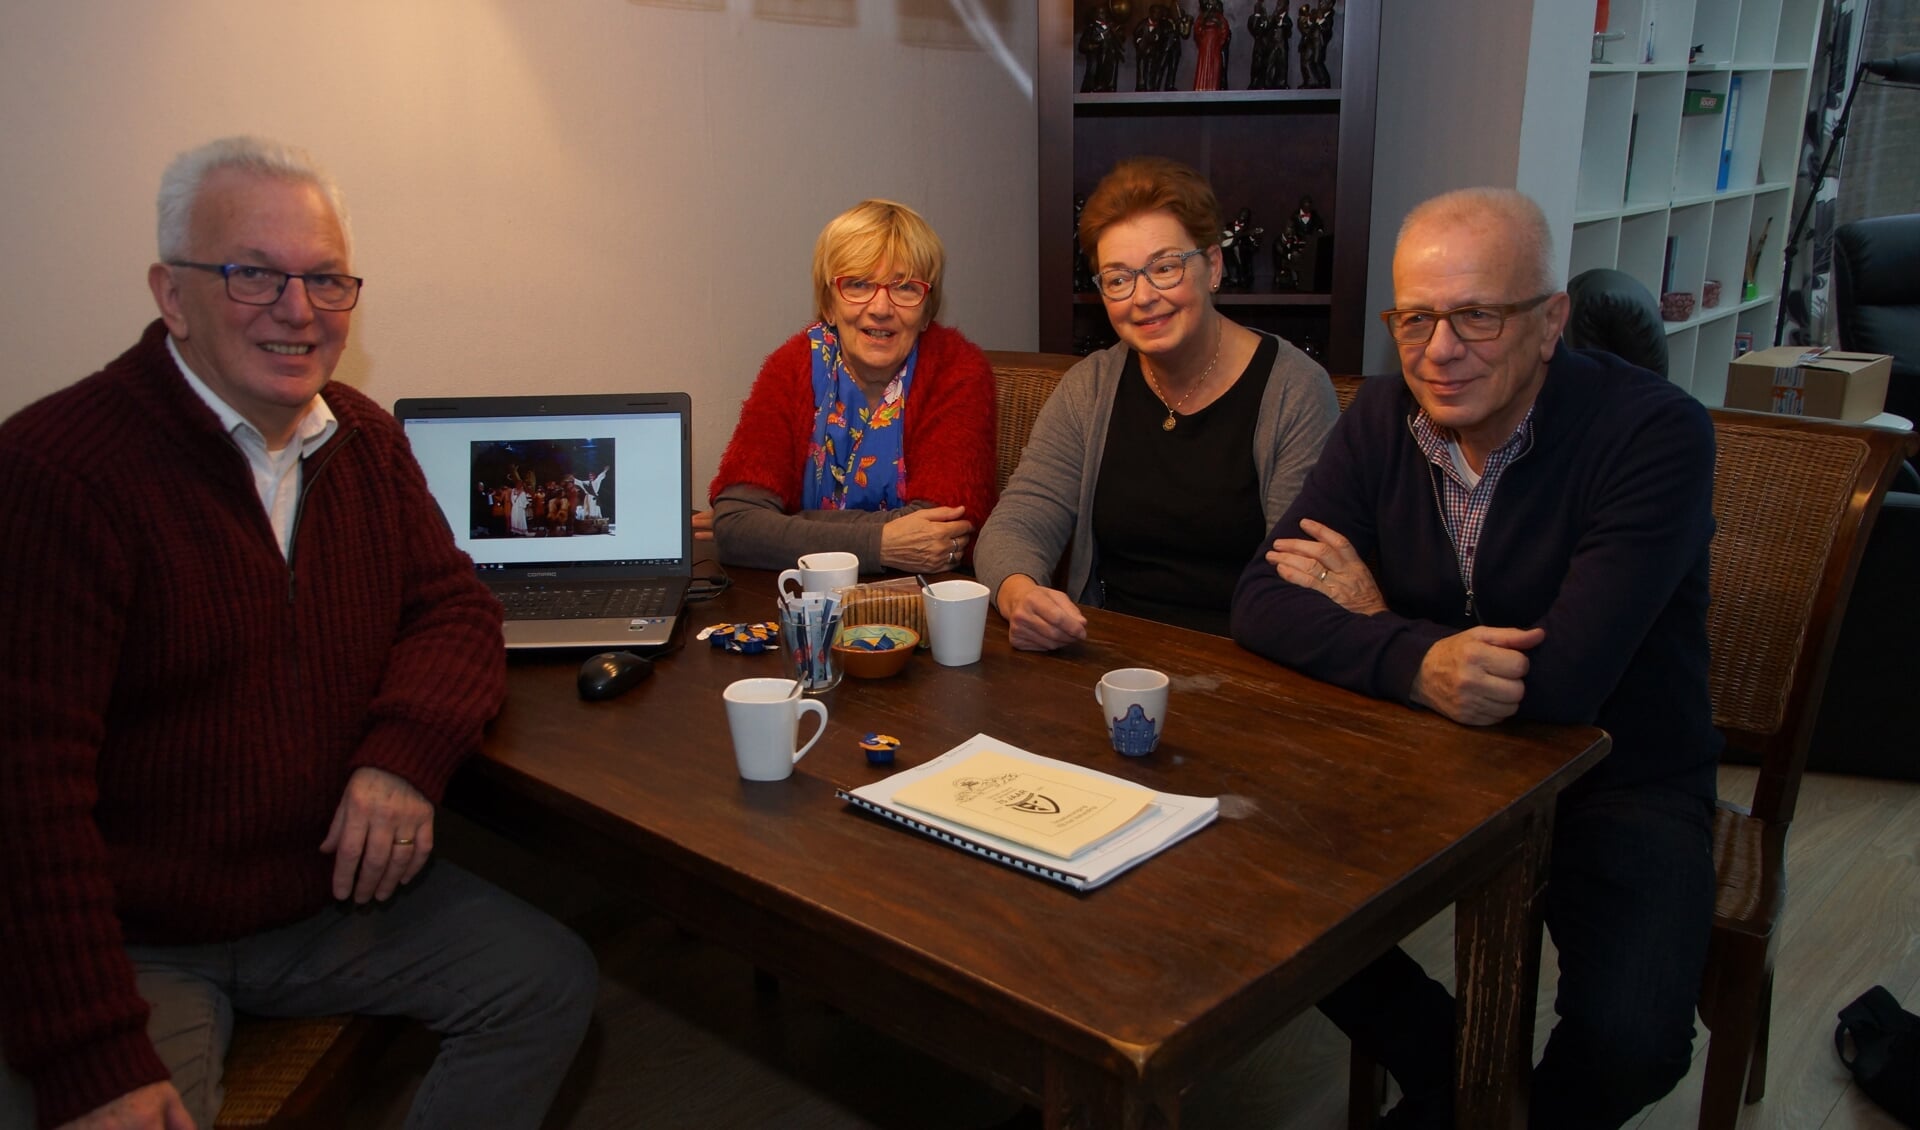  Regisseur Mart Schrauwen, leescommissielid Annie Schrauwen, secretaris Annemiek Schrauwen en voorzitter Wim van den Broek verheugen zich op dit bijzondere jubileumjaar. 